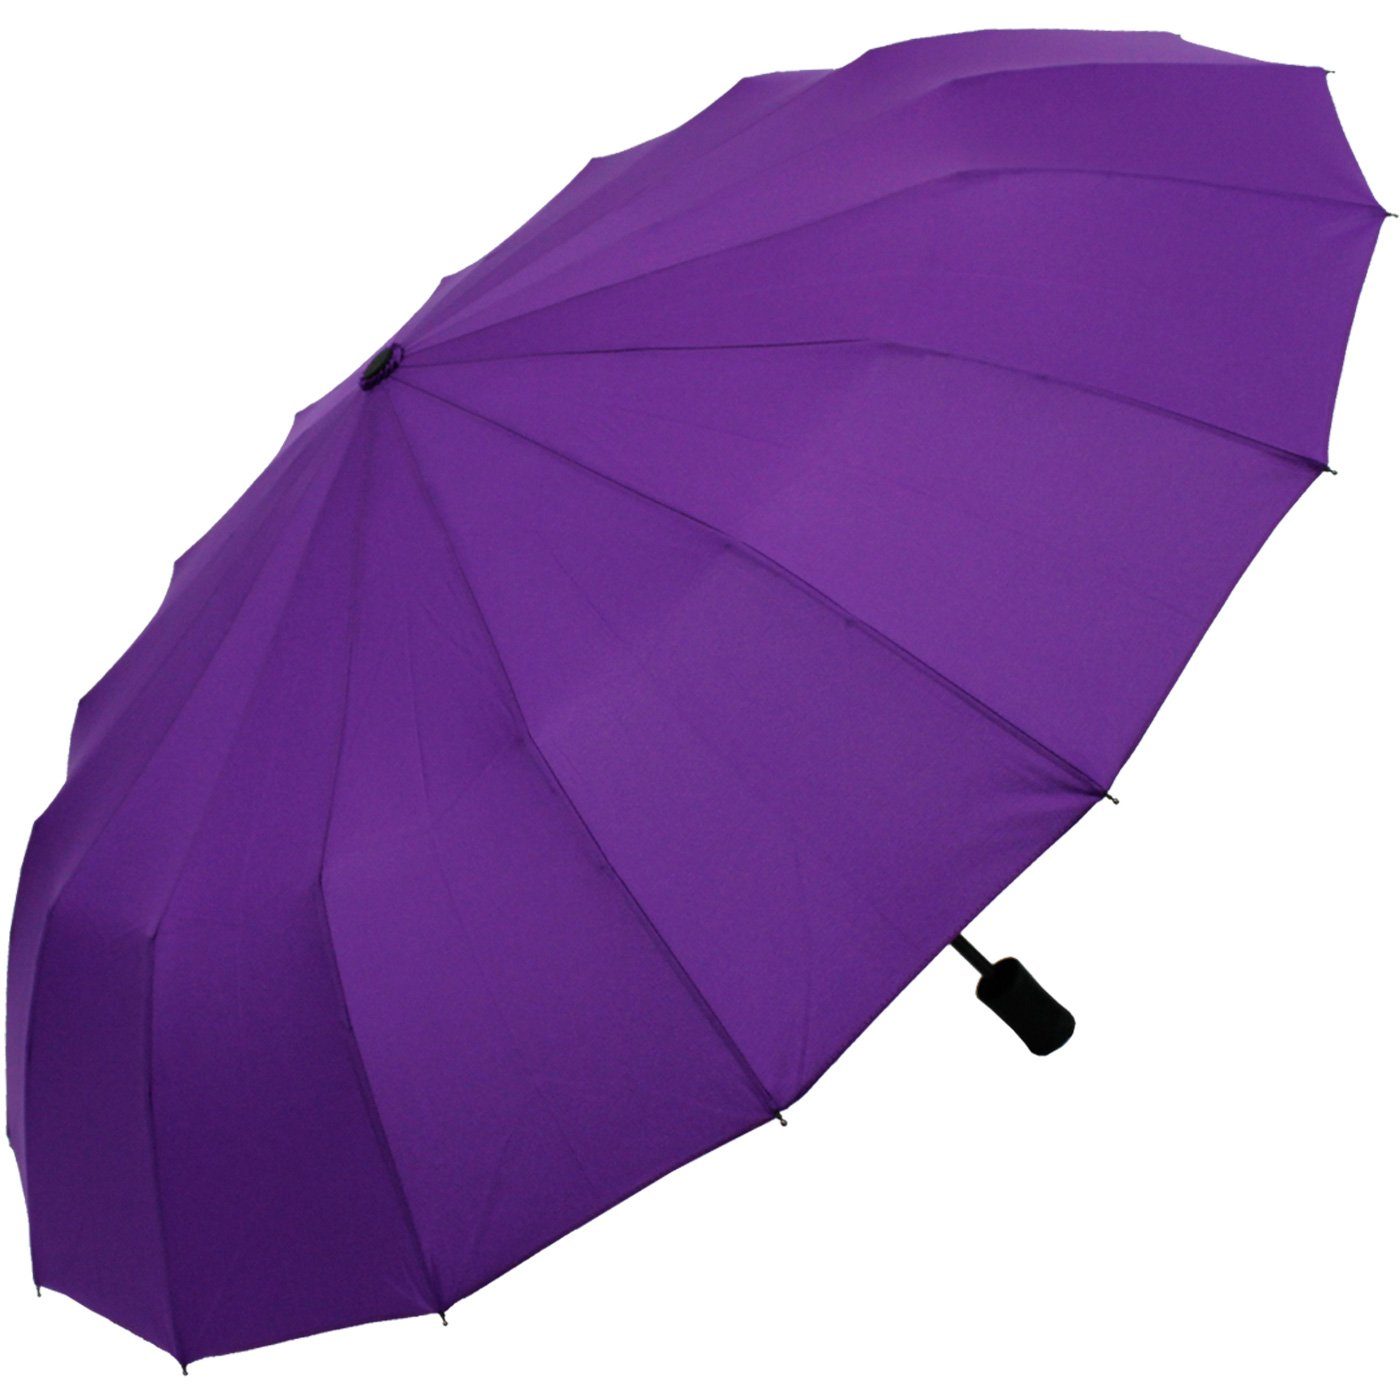 Mini stabil und farbenfroh iX-brella farbenfroh, Streben lila extra 16 Taschenregenschirm mit